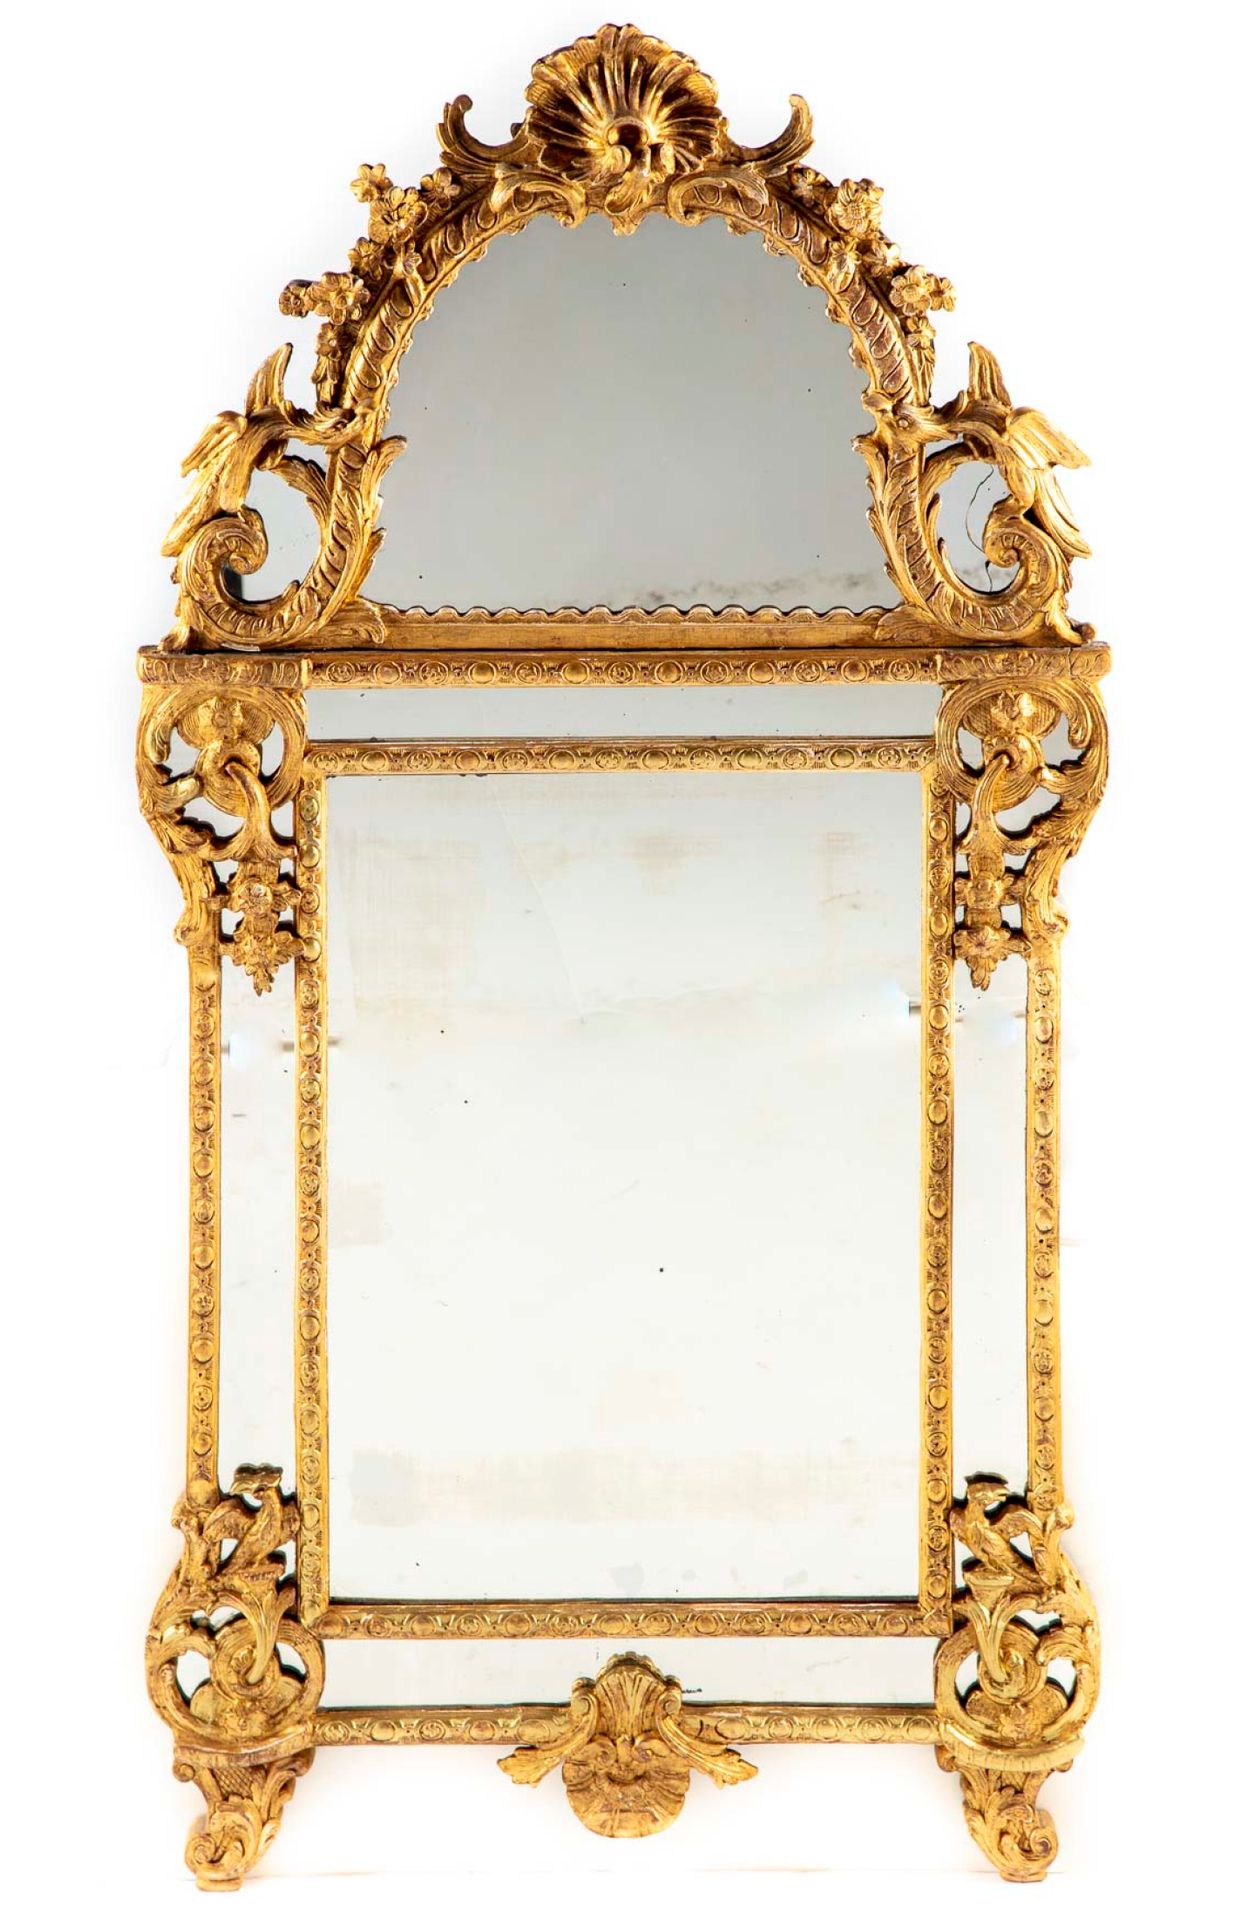 Null Vergoldeter Holzspiegel verziert mit Laub, Muscheln, Blumen und Vögeln

Lou&hellip;